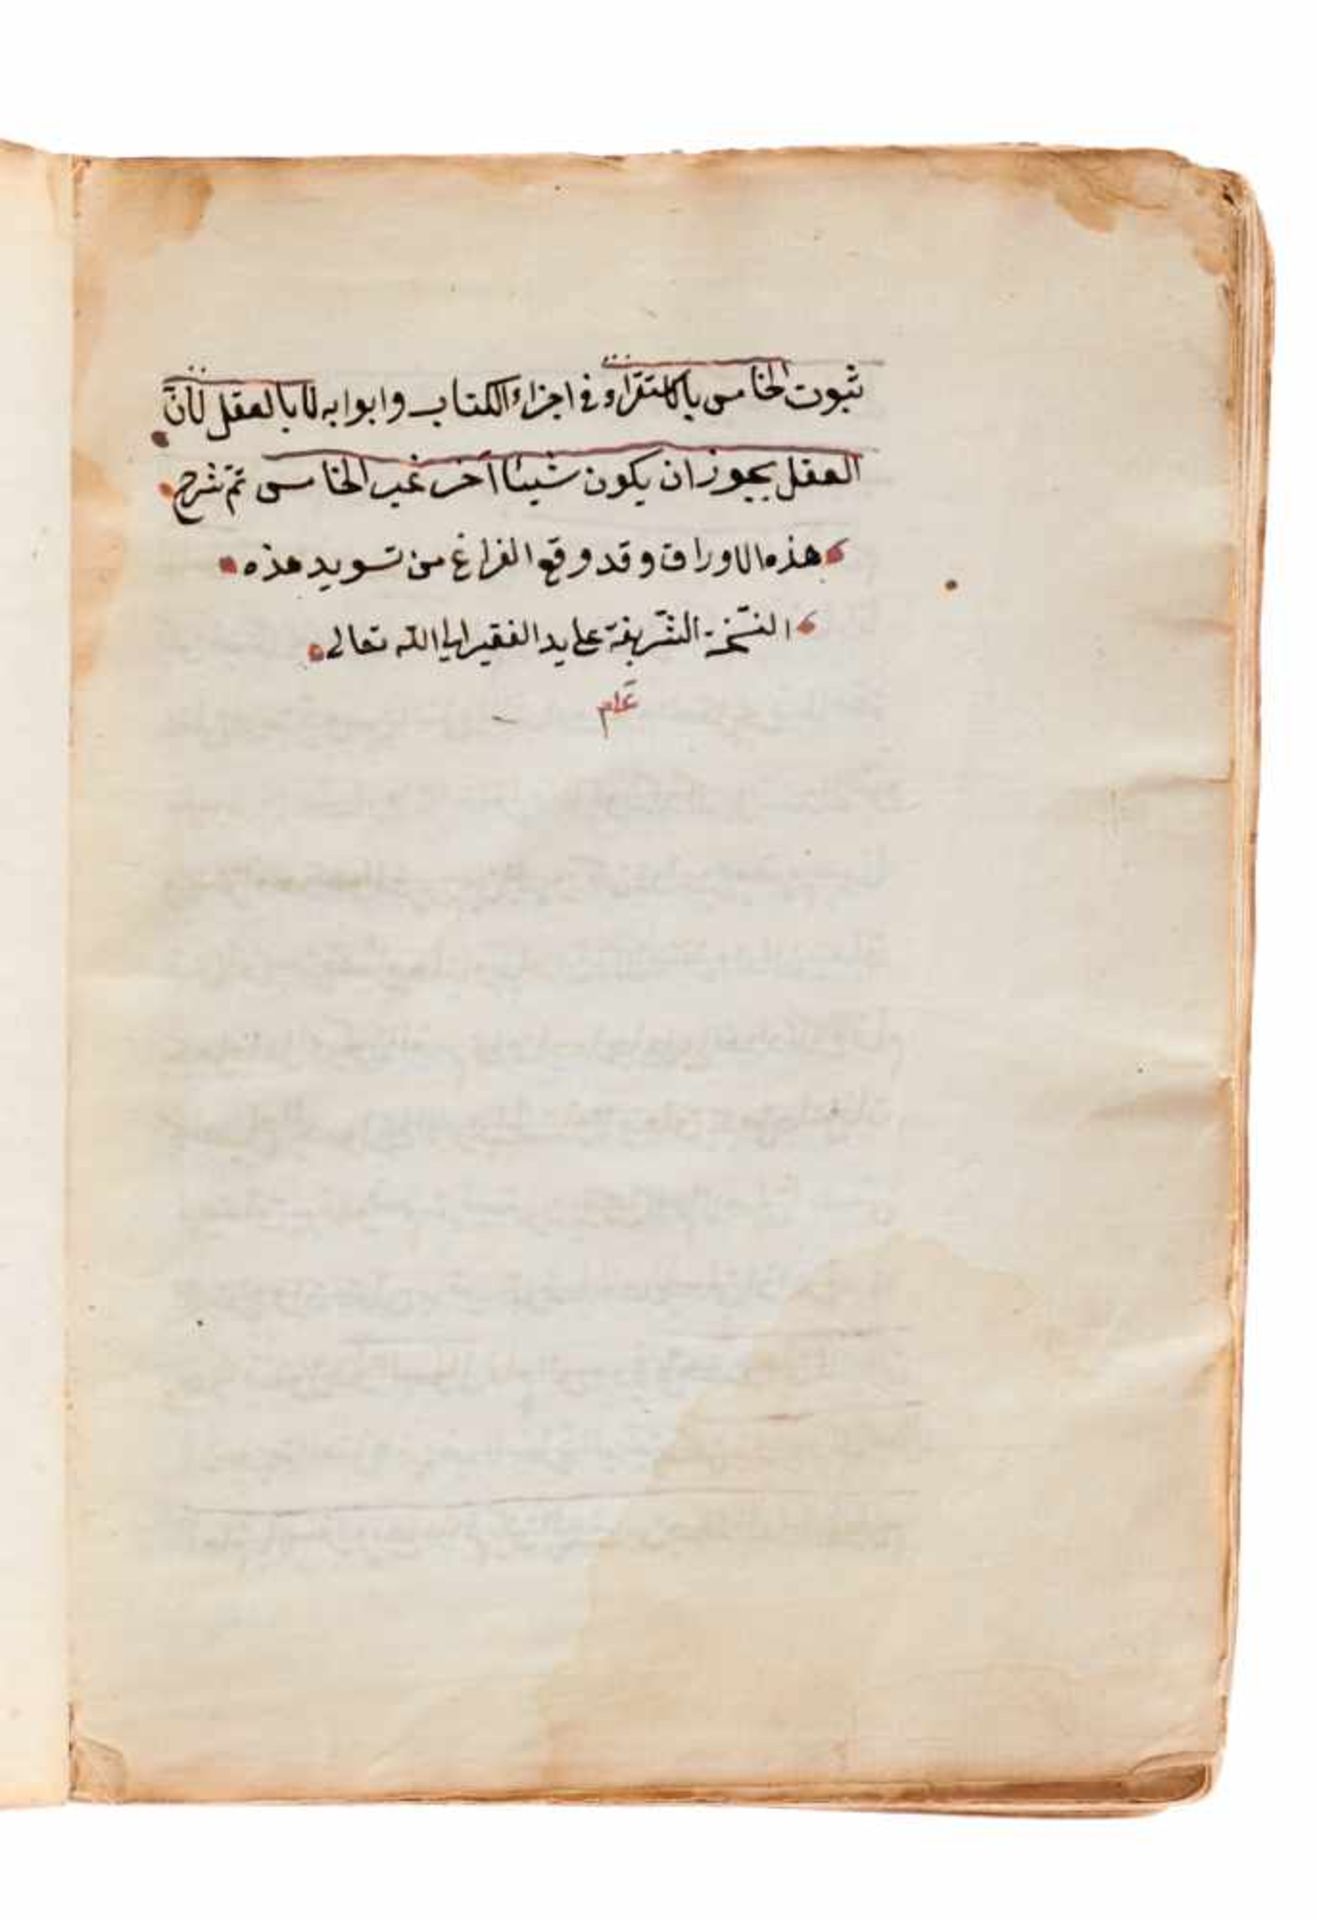 Ya'qub ibn Sayyid - "Sarh dibaga" und "Al-misbah".Grammatik des Arabischen. Arabische Handschrift - Bild 2 aus 3